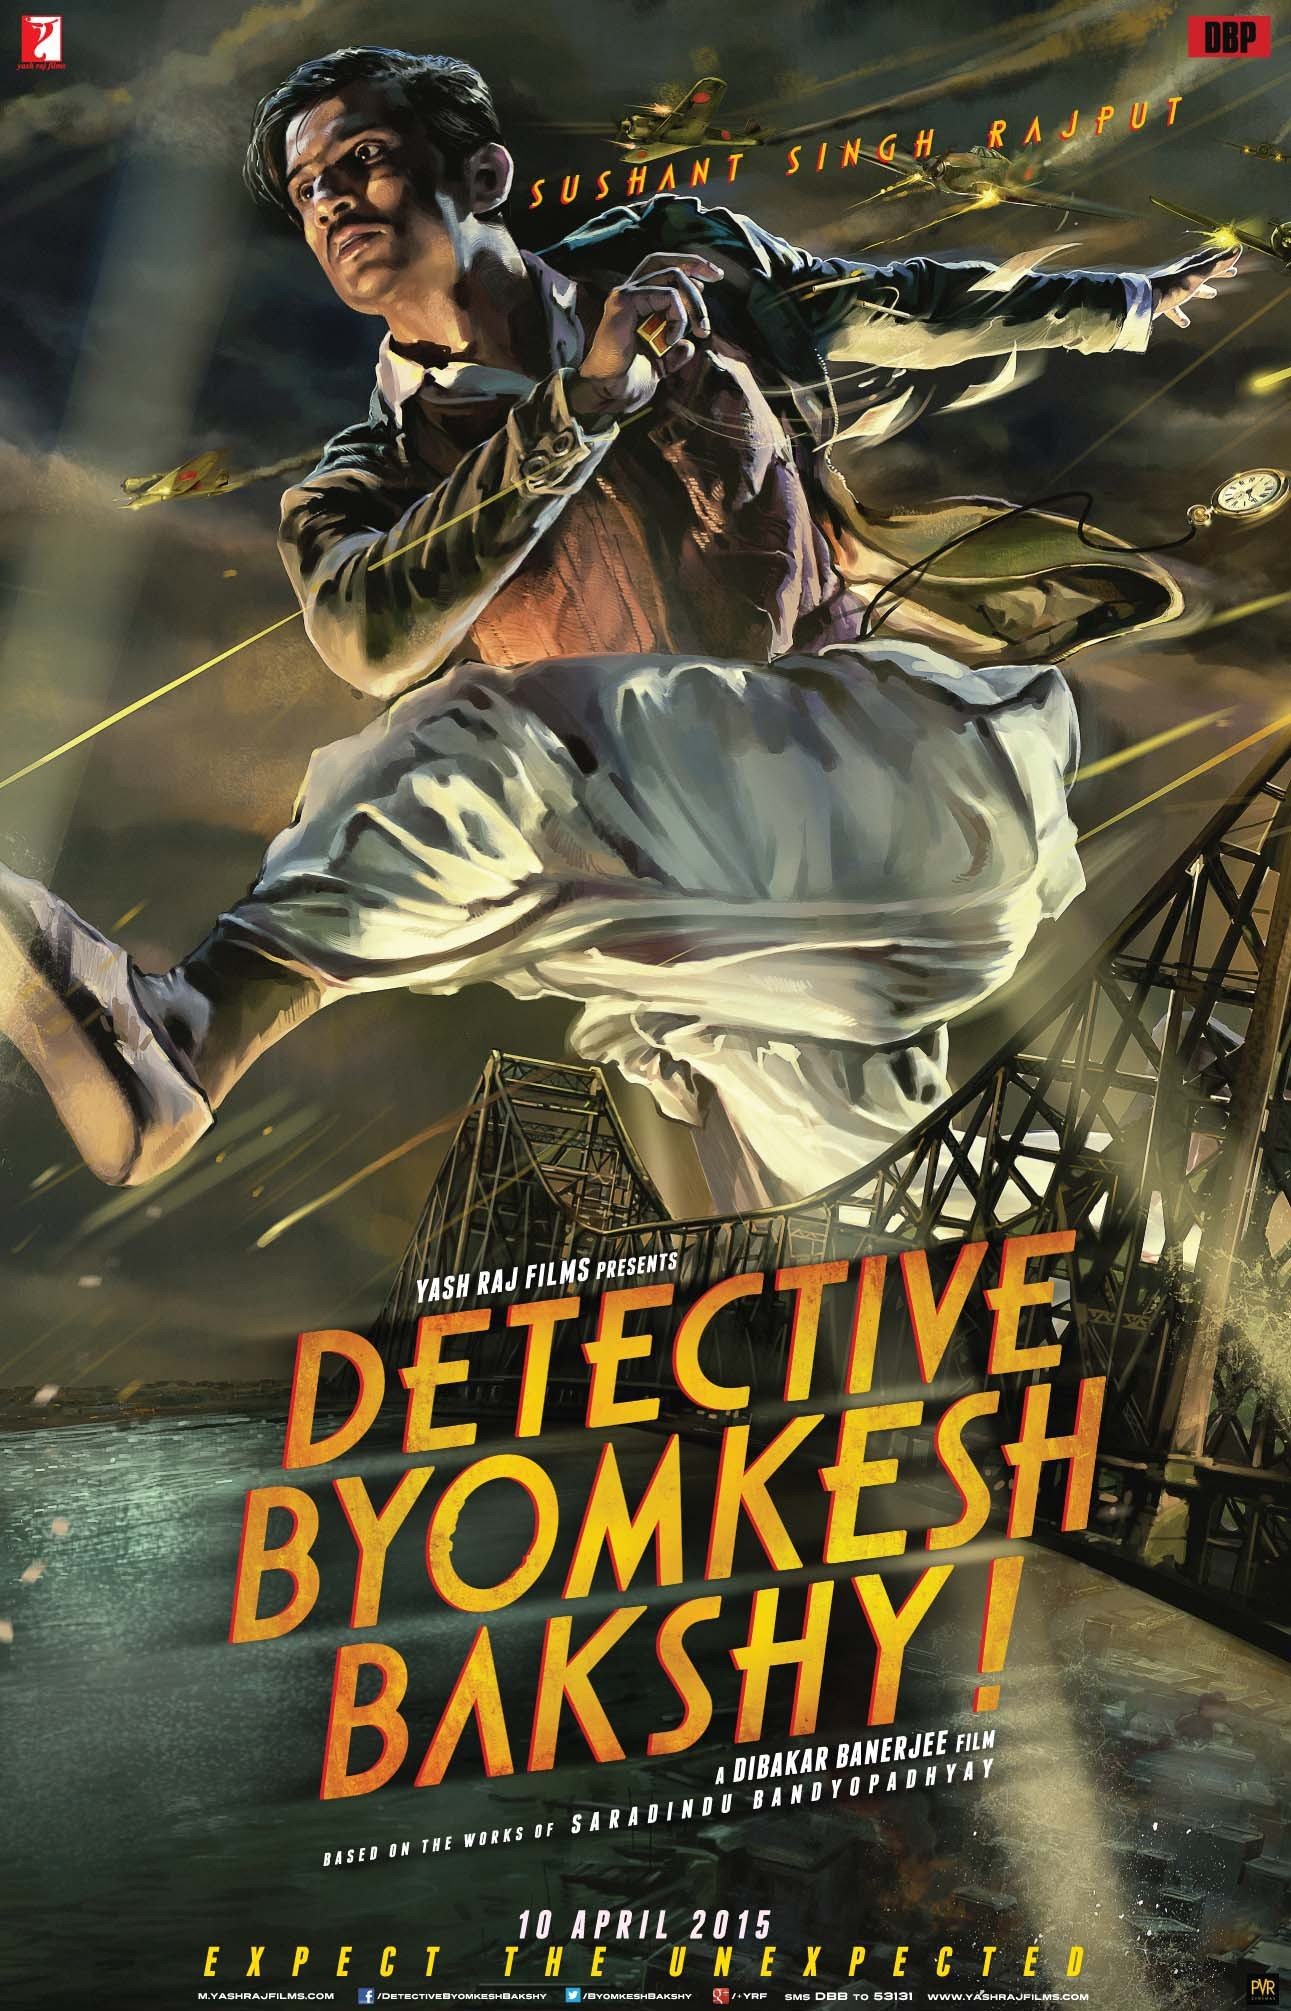 Detective Byomkesh Bakshy! For Dumb Charades